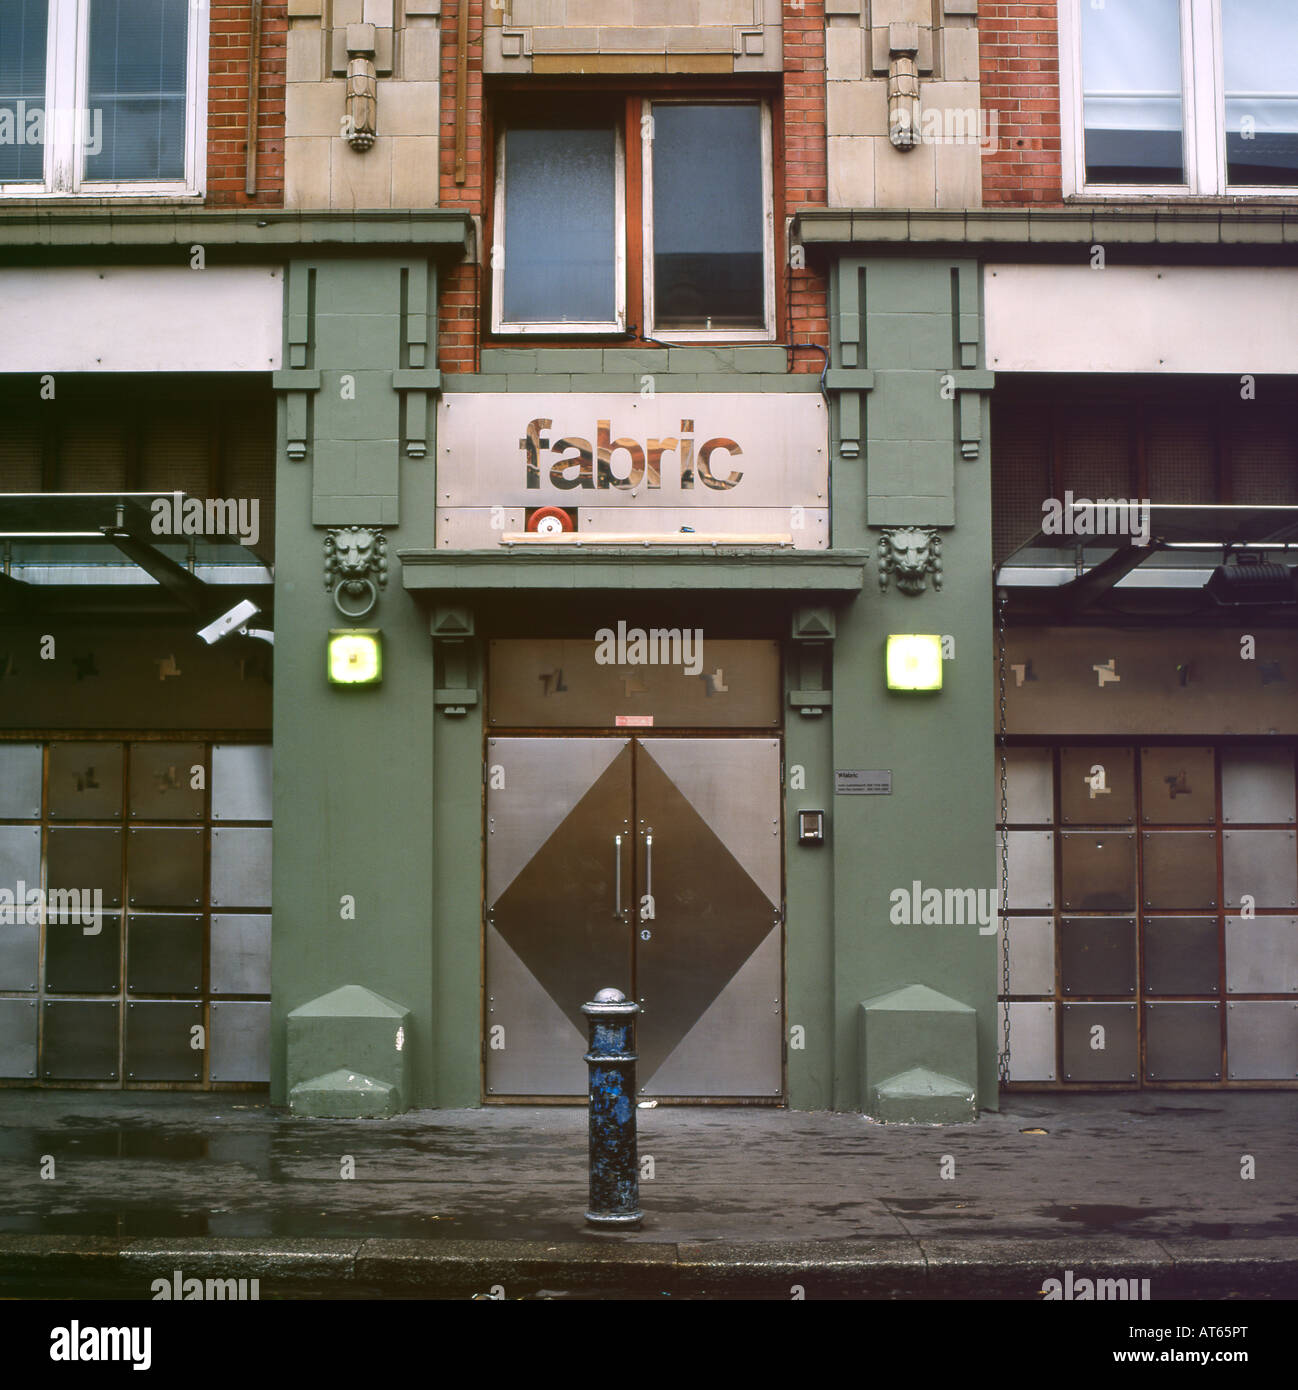 Vue extérieure et panneau d'entrée de la Fabric Nightclub près de Smithfield Market à Farringdon Londres EC1 Angleterre Kathy DEWITT Banque D'Images